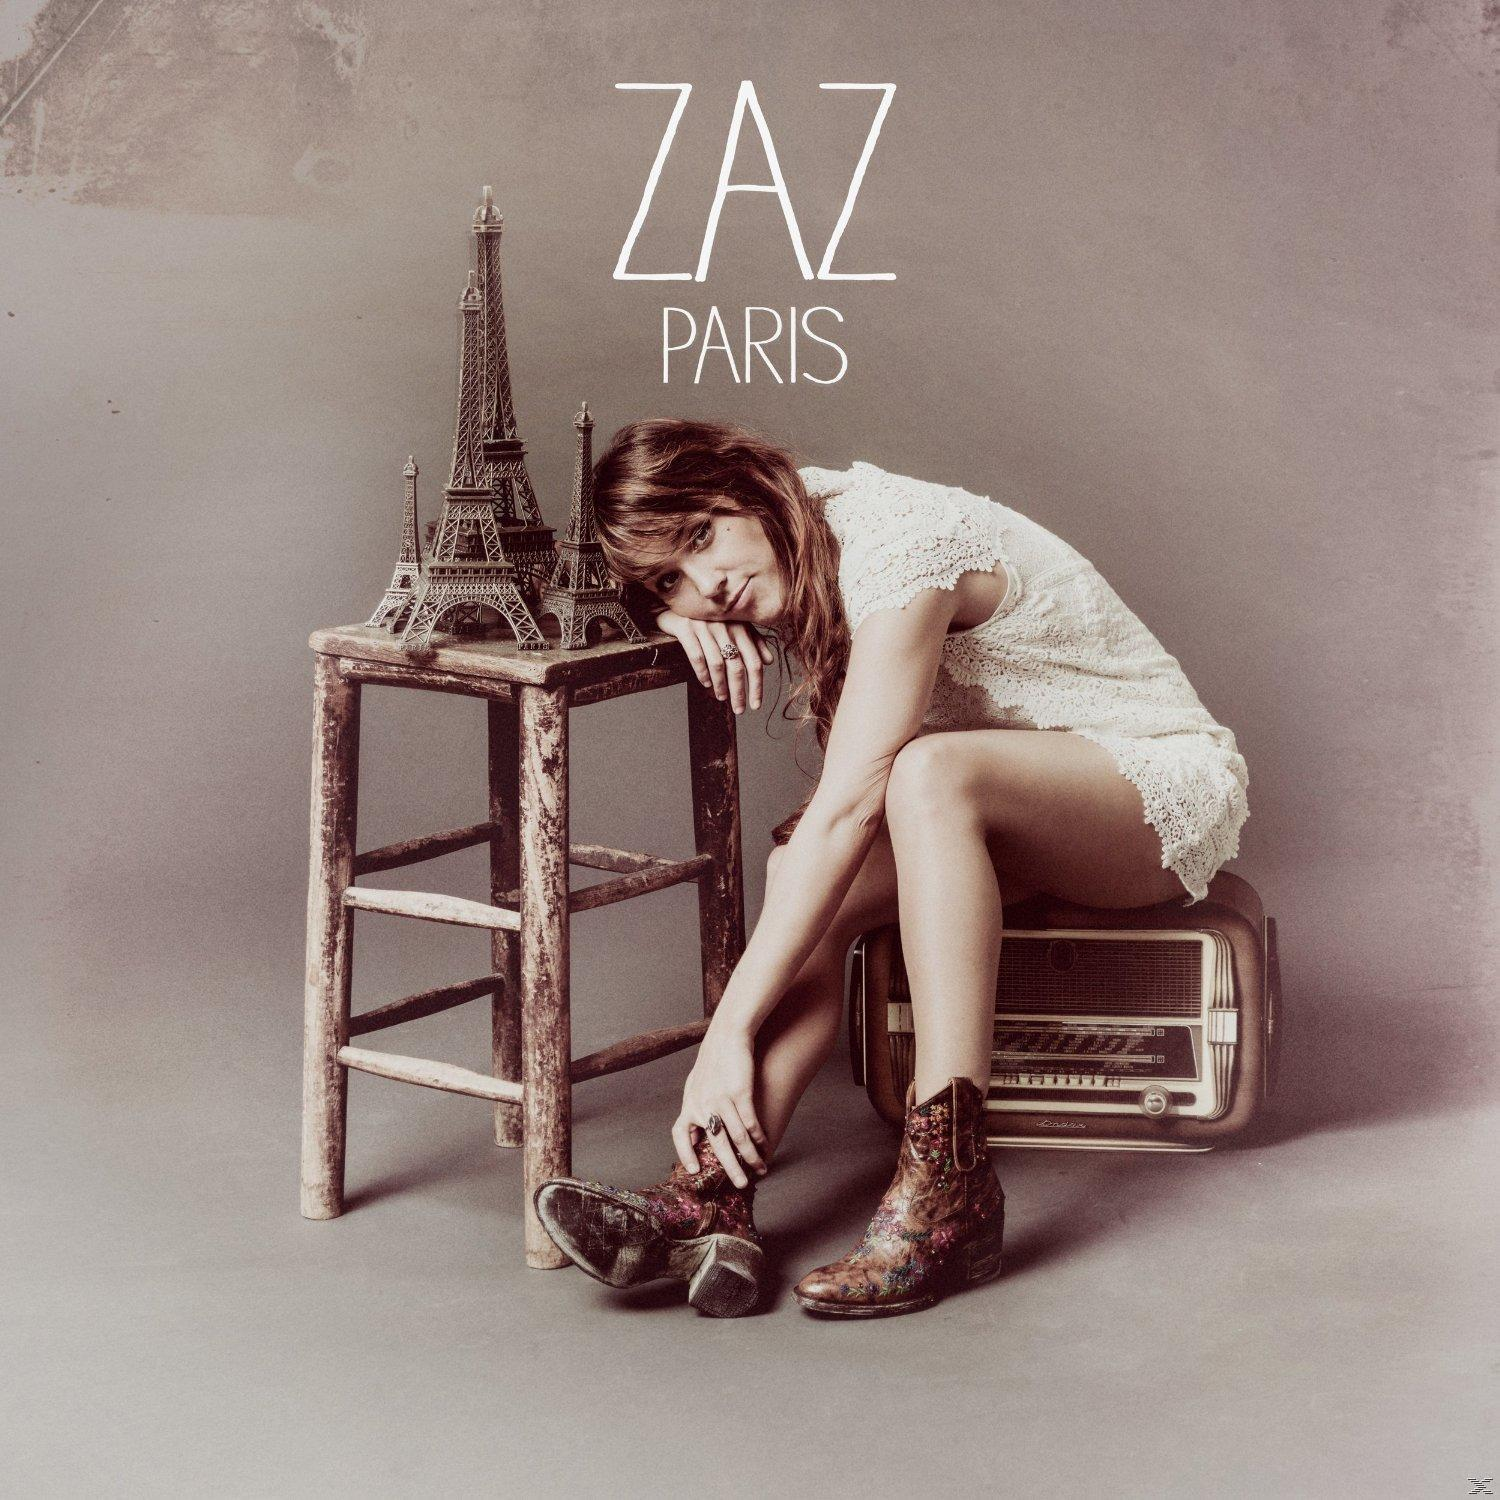 Zaz - - Paris (CD)